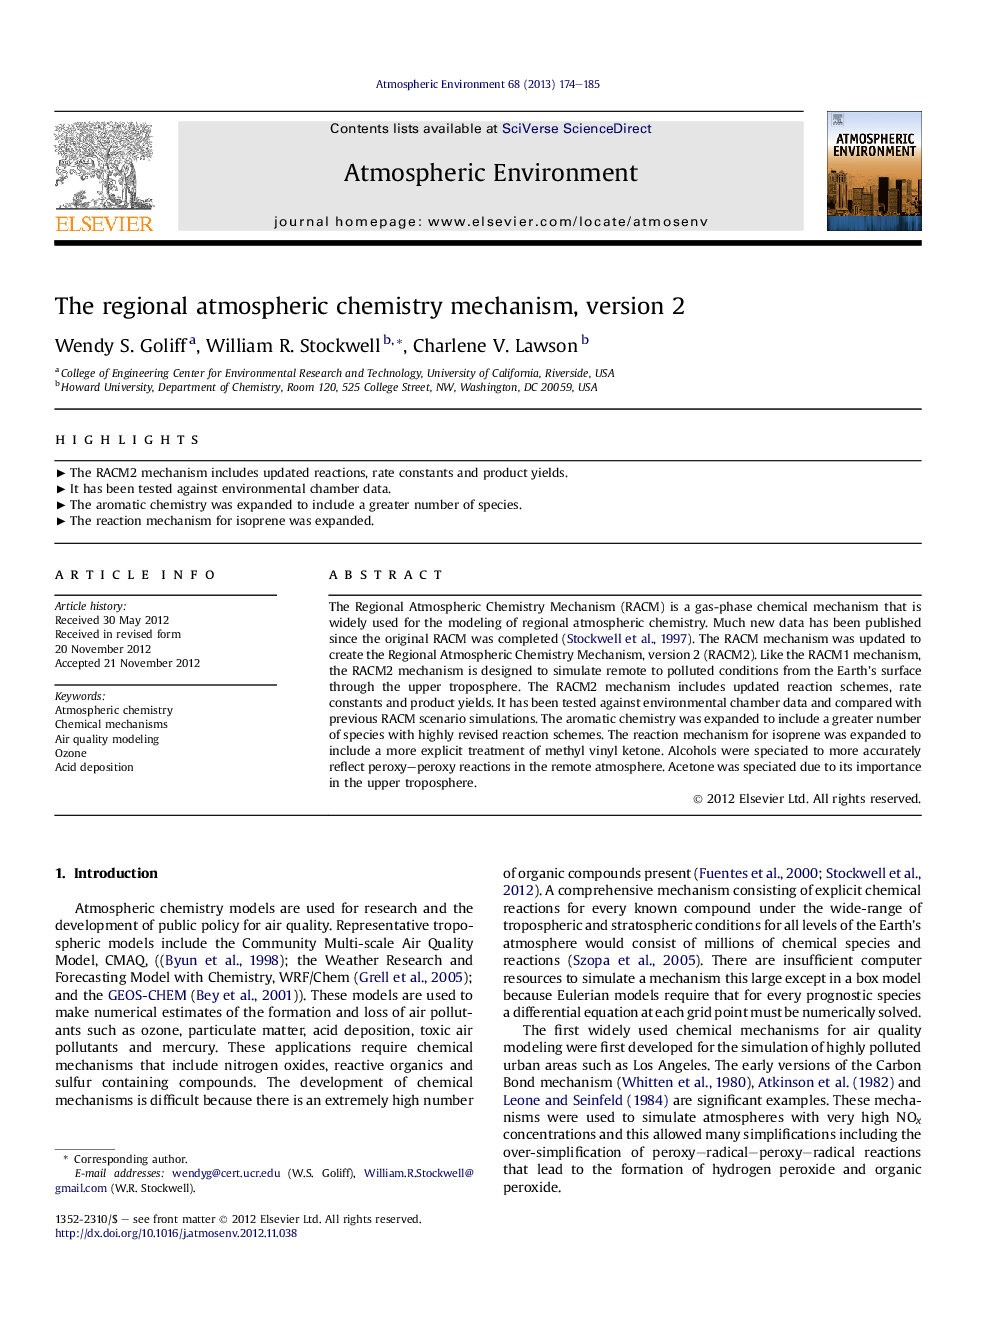 The regional atmospheric chemistry mechanism, version 2